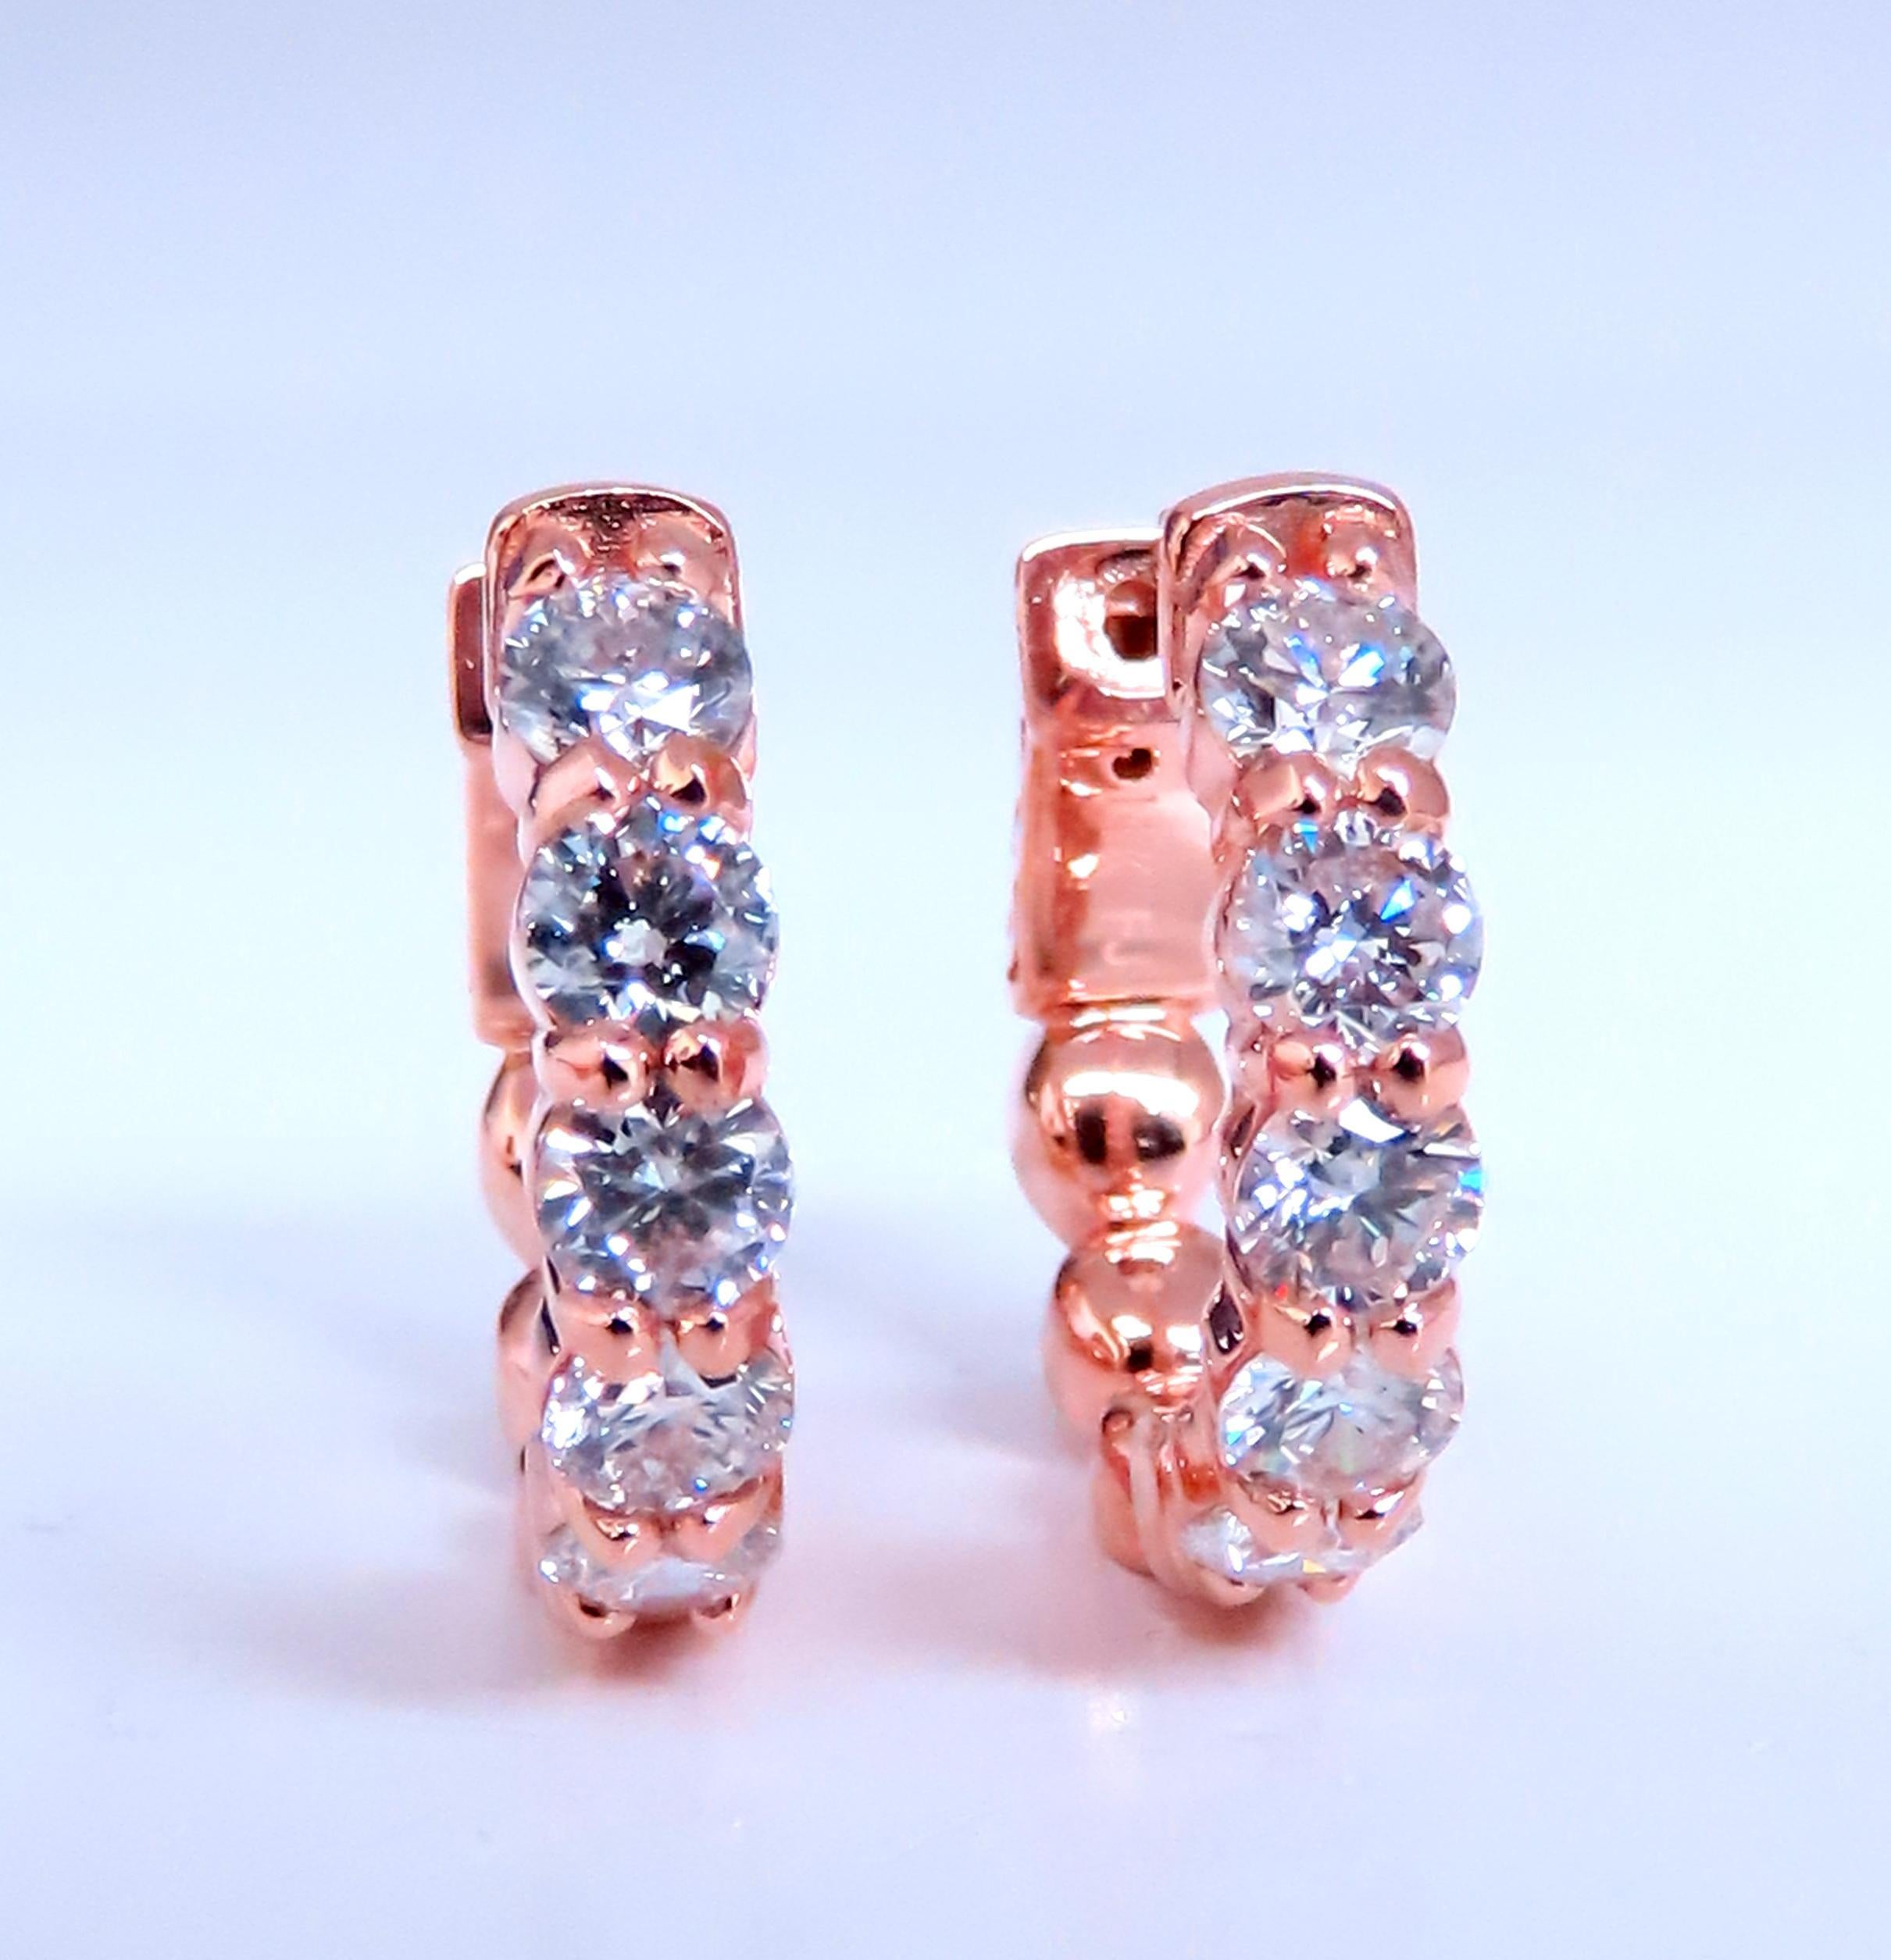 1,98ct Natürliche runde Diamant-Ohrringe.
Moderner und funktioneller Knopfverschluss.
G-Farbe Vs-2 Klarheit.
14kt. Roségold.
7 Gramm
18,5 mm breit
3,5 mm Diamantreihe 
Die Diamanten befinden sich in geteilten Zacken, um maximale Brillanz zu